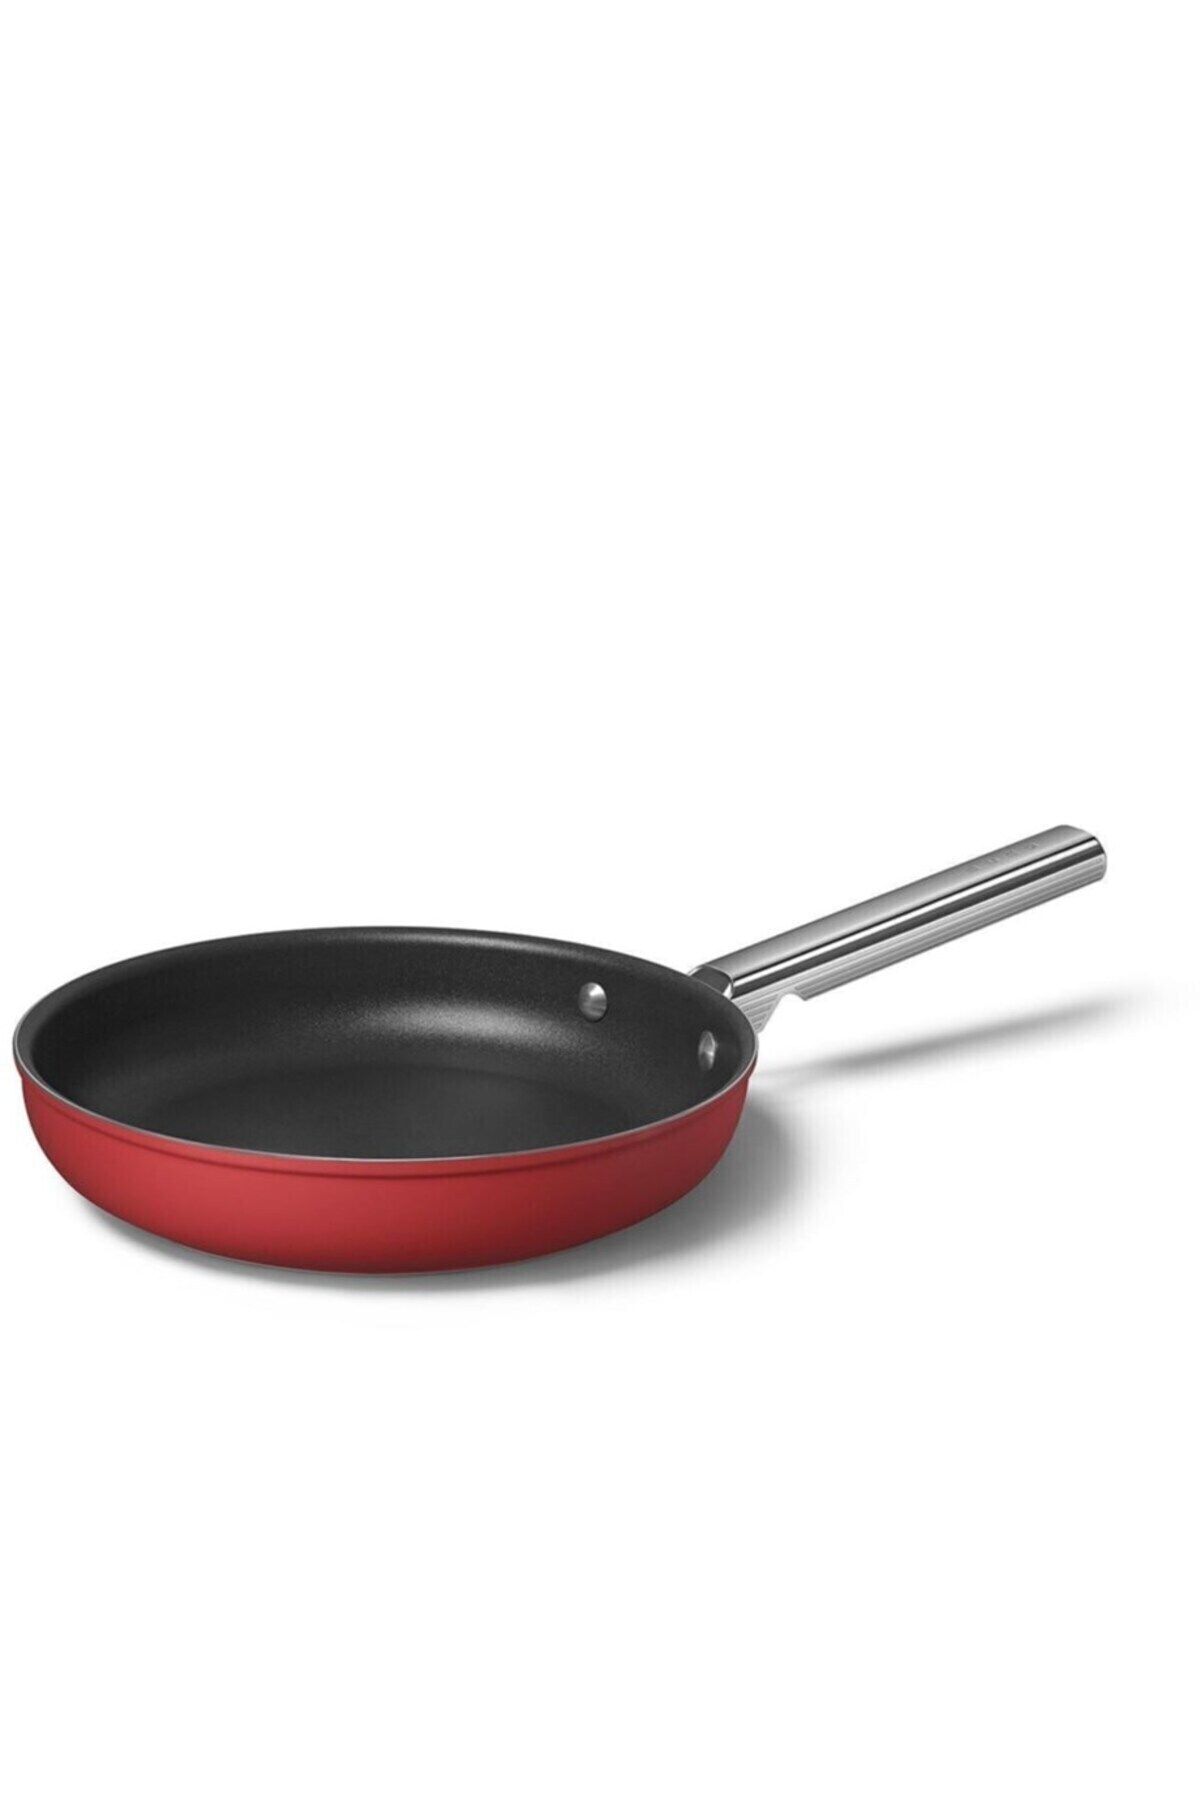 Smeg Cookware 50's Style Kırmızı Tava 26 Cm